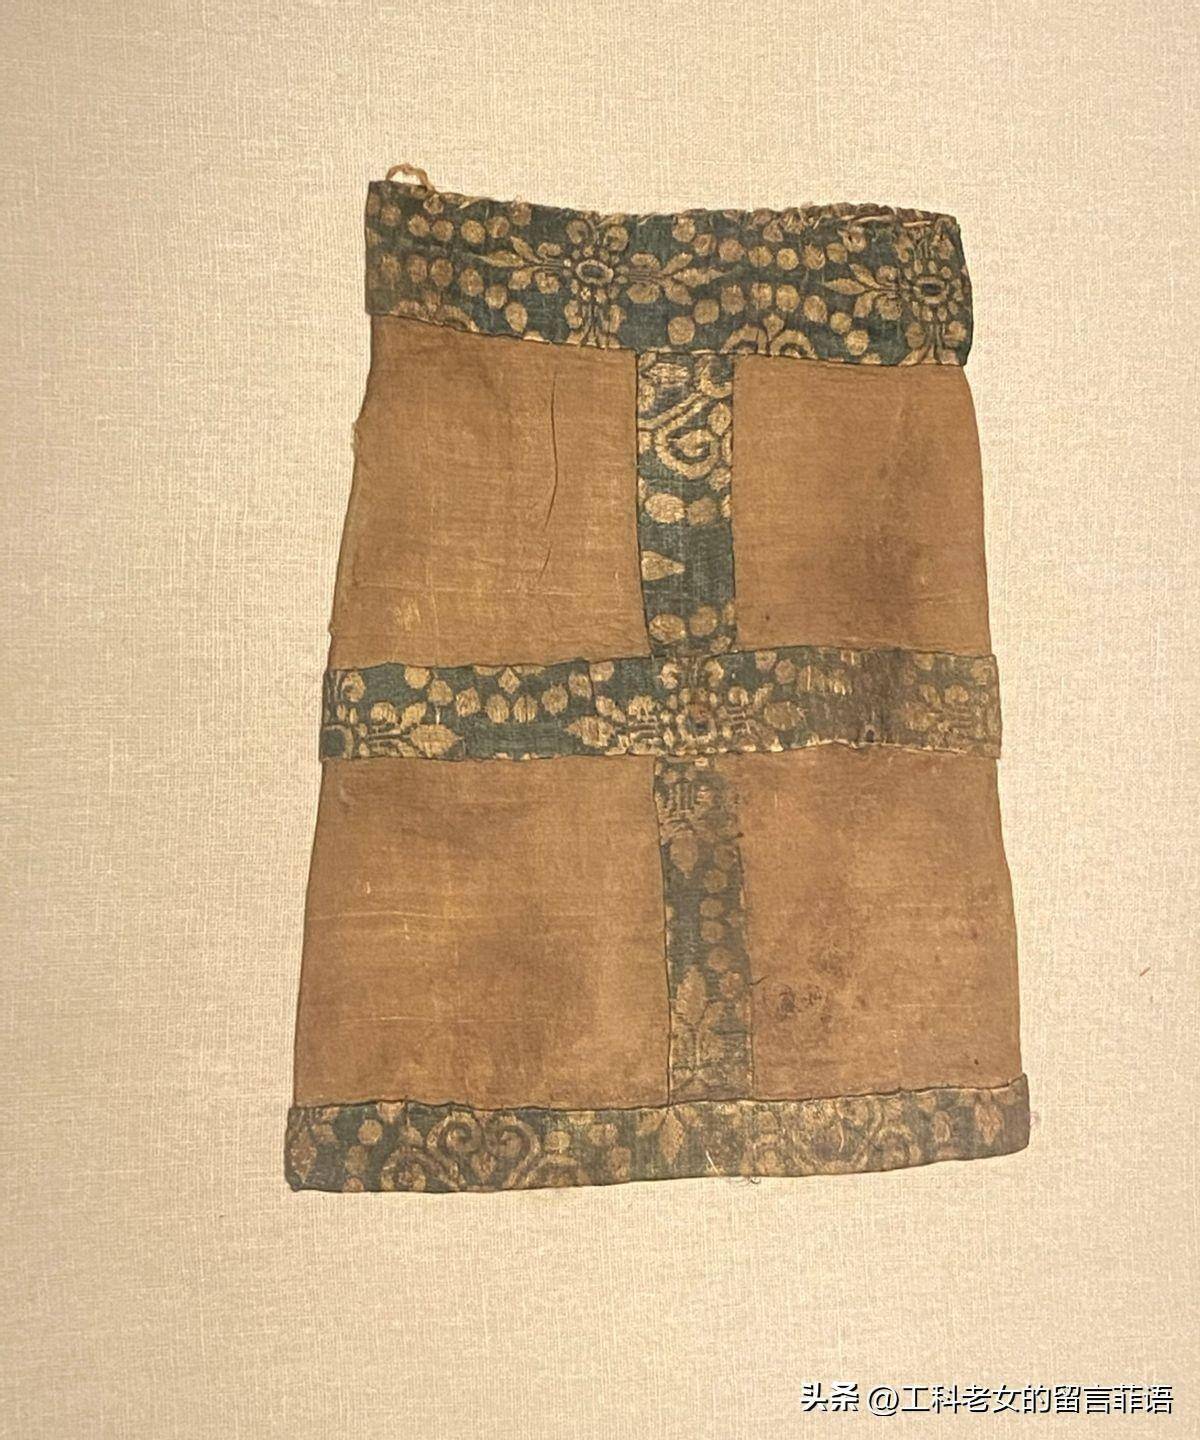 丝绸博物馆:从大唐布料,看唐代的兼收并蓄与富贵繁华